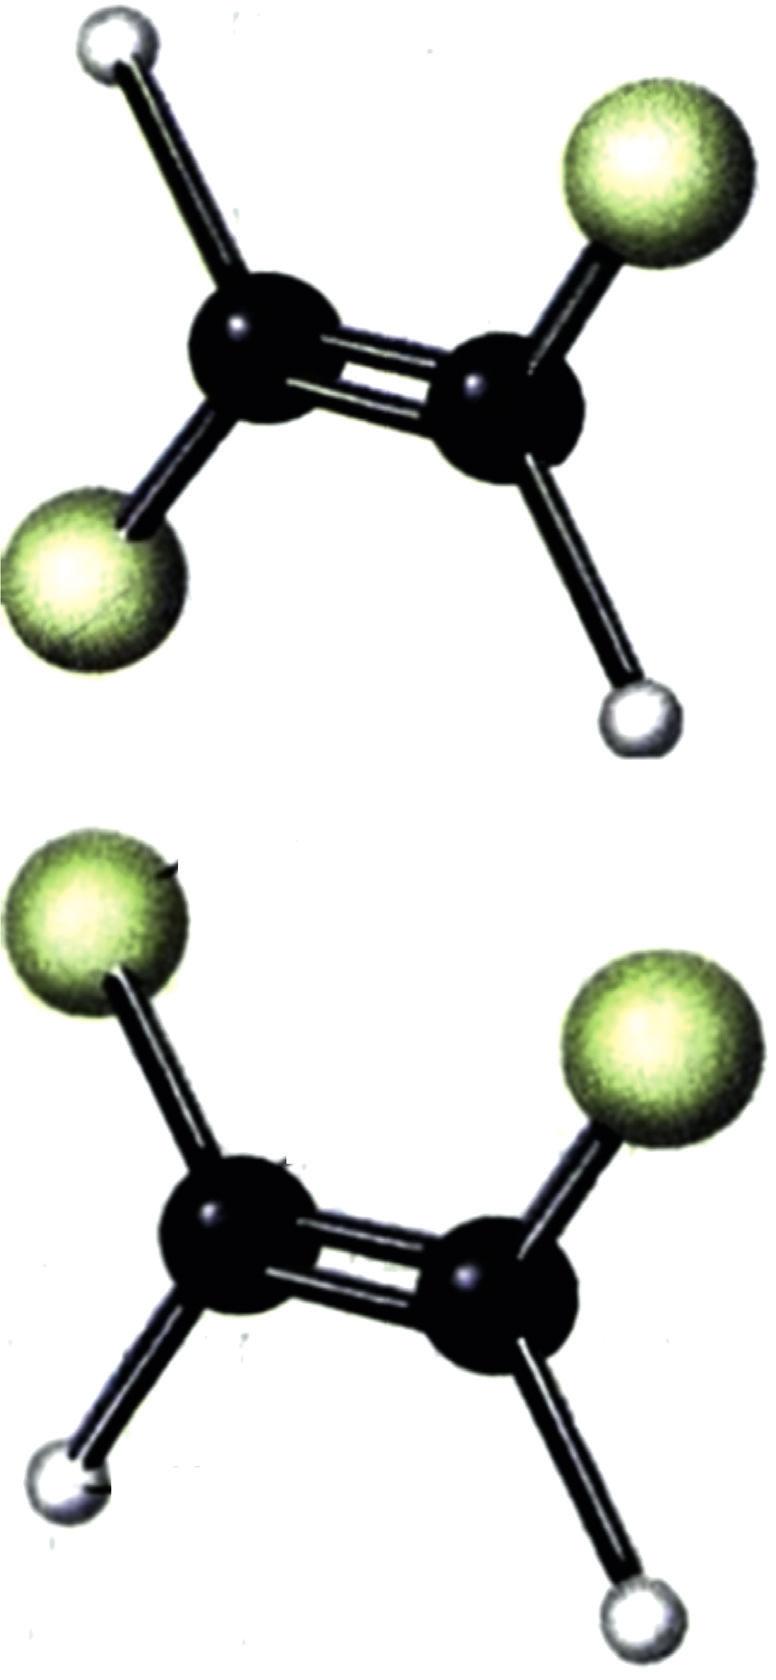 Στερεοϊσομέρεια: Υπάρχουν ενώσεις που έχουν τον ίδιο συντακτικό τύπο Cl και